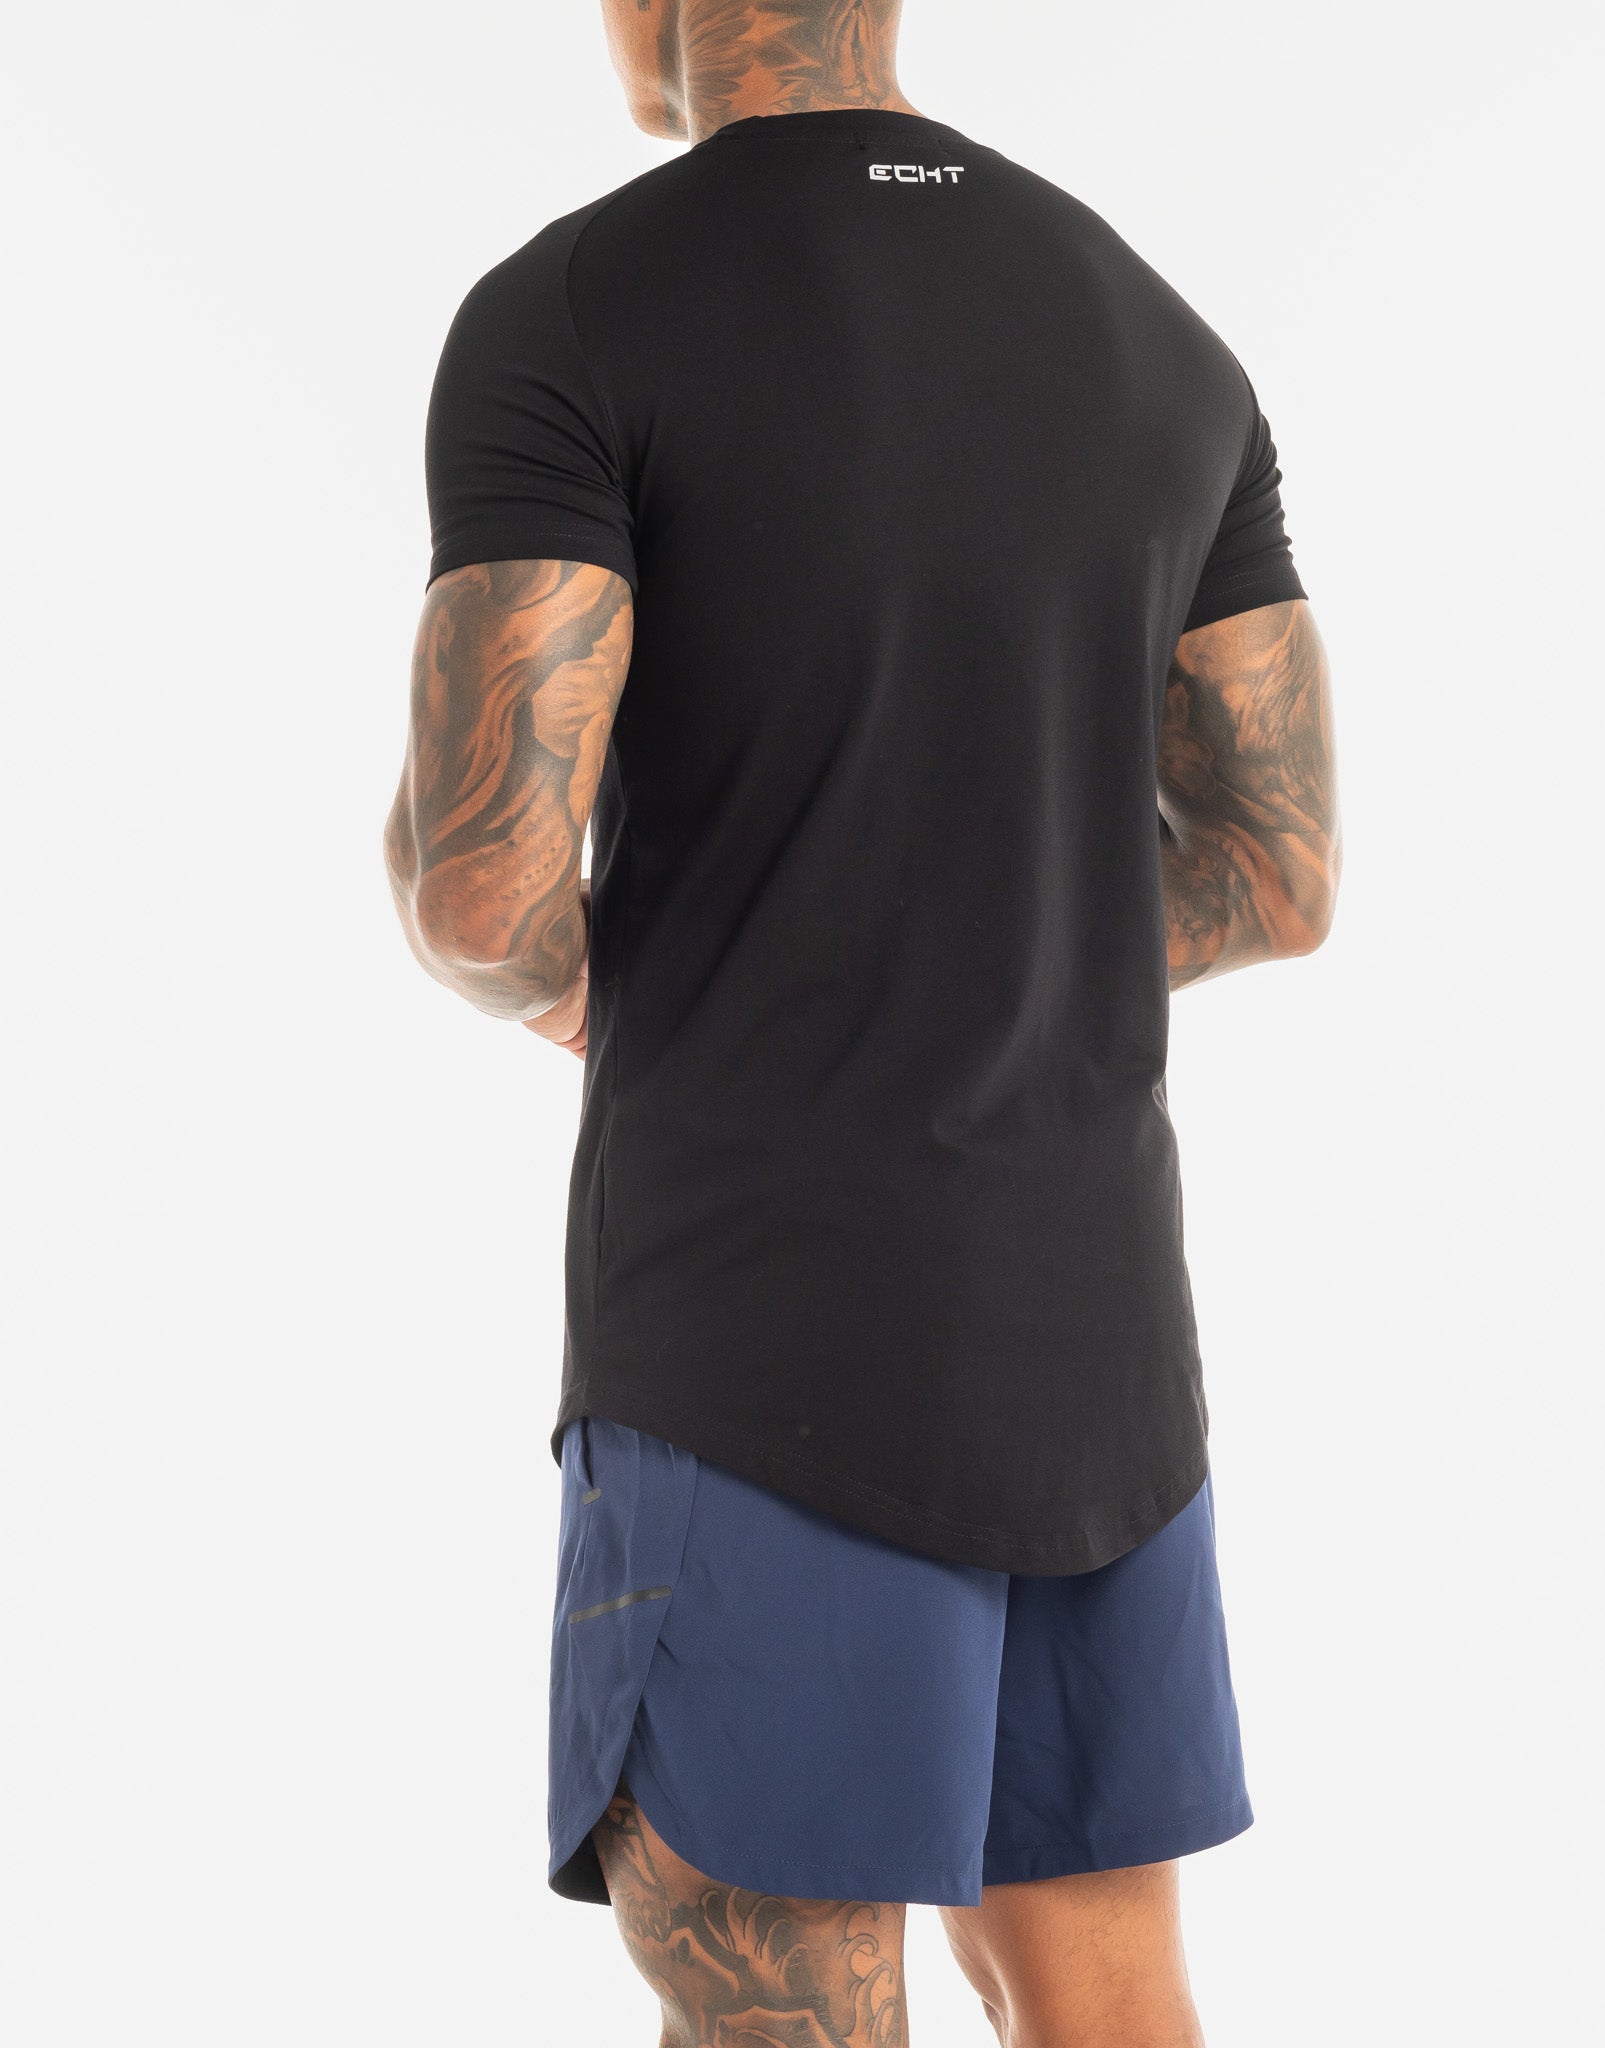 Echt Core T-Shirt - Black